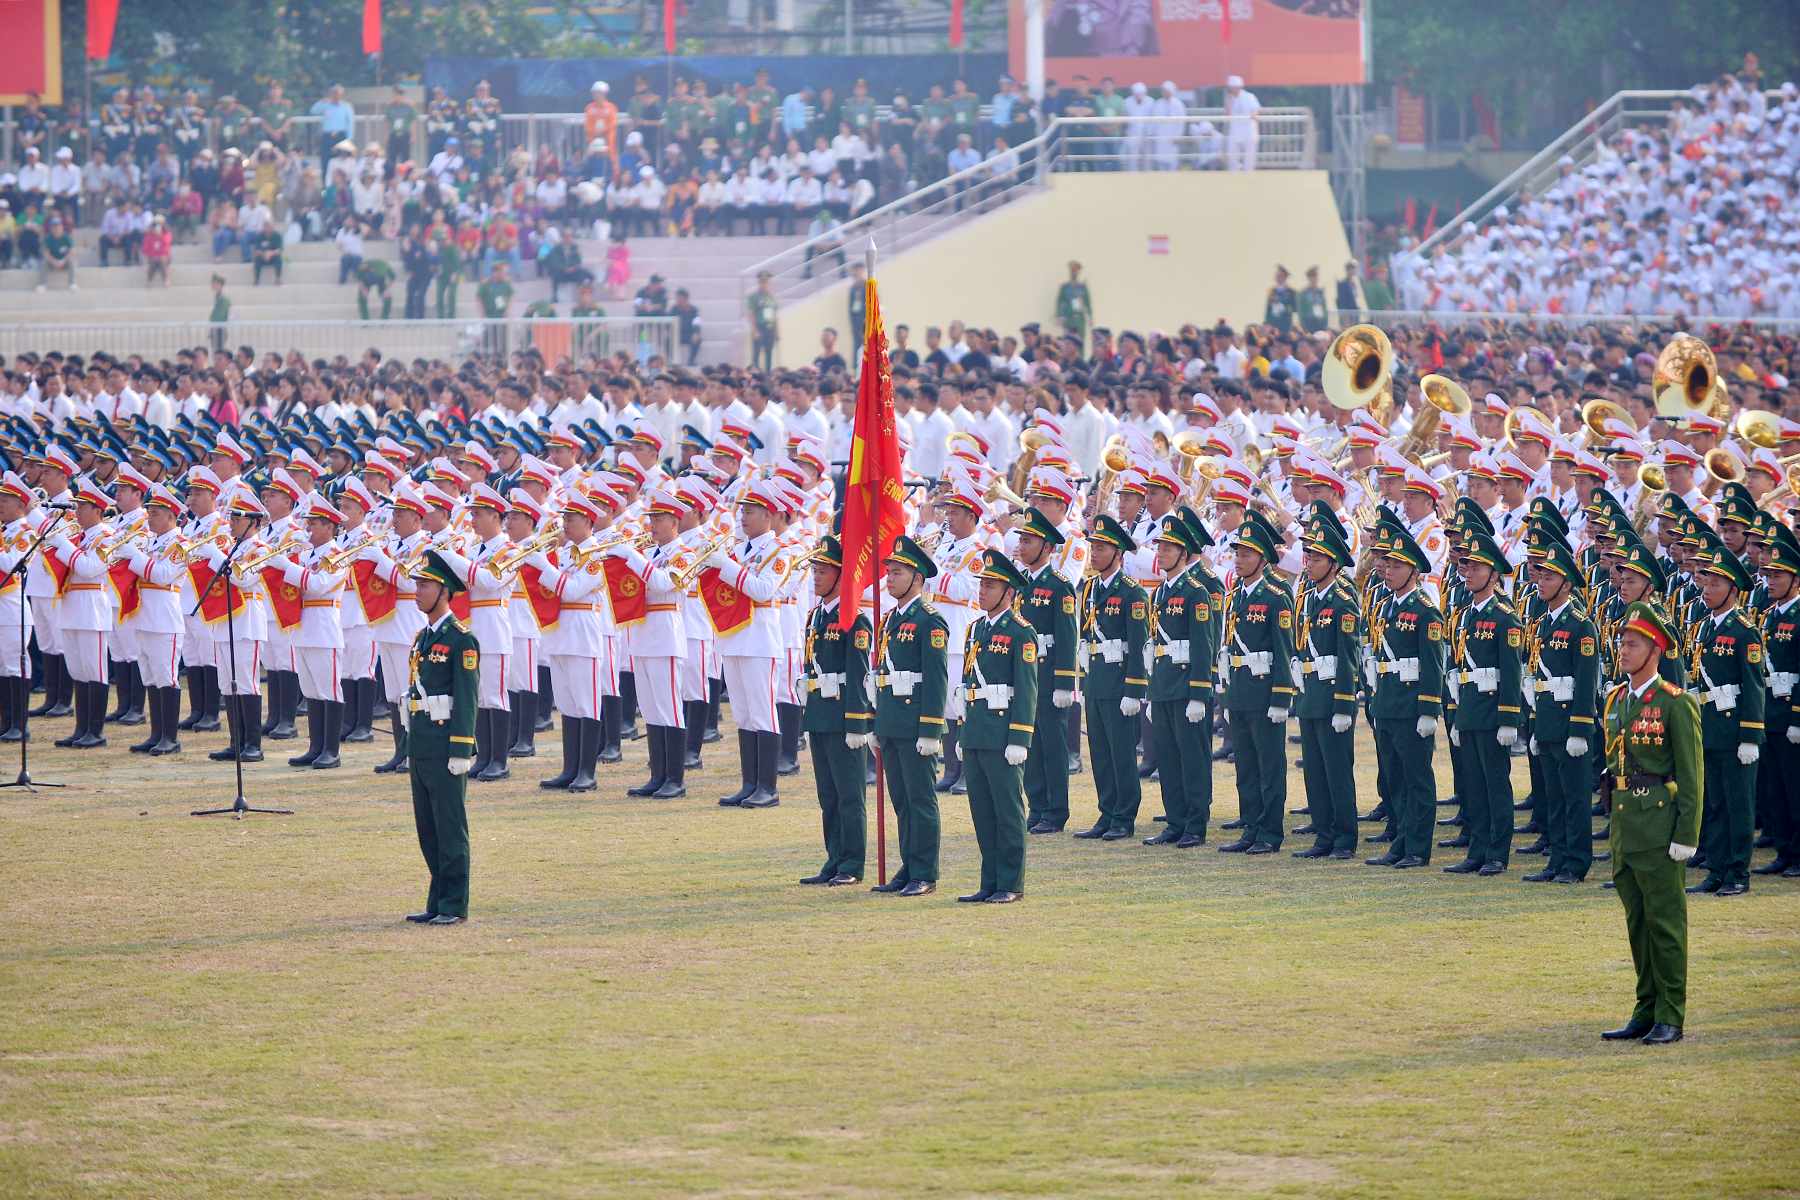 Các khối diễu binh, diễu hành tập trung ở sân vận động tỉnh Điện Biên để tổng duyệt lễ kỷ niệm 70 năm chiến thắng Điện Biên Phủ